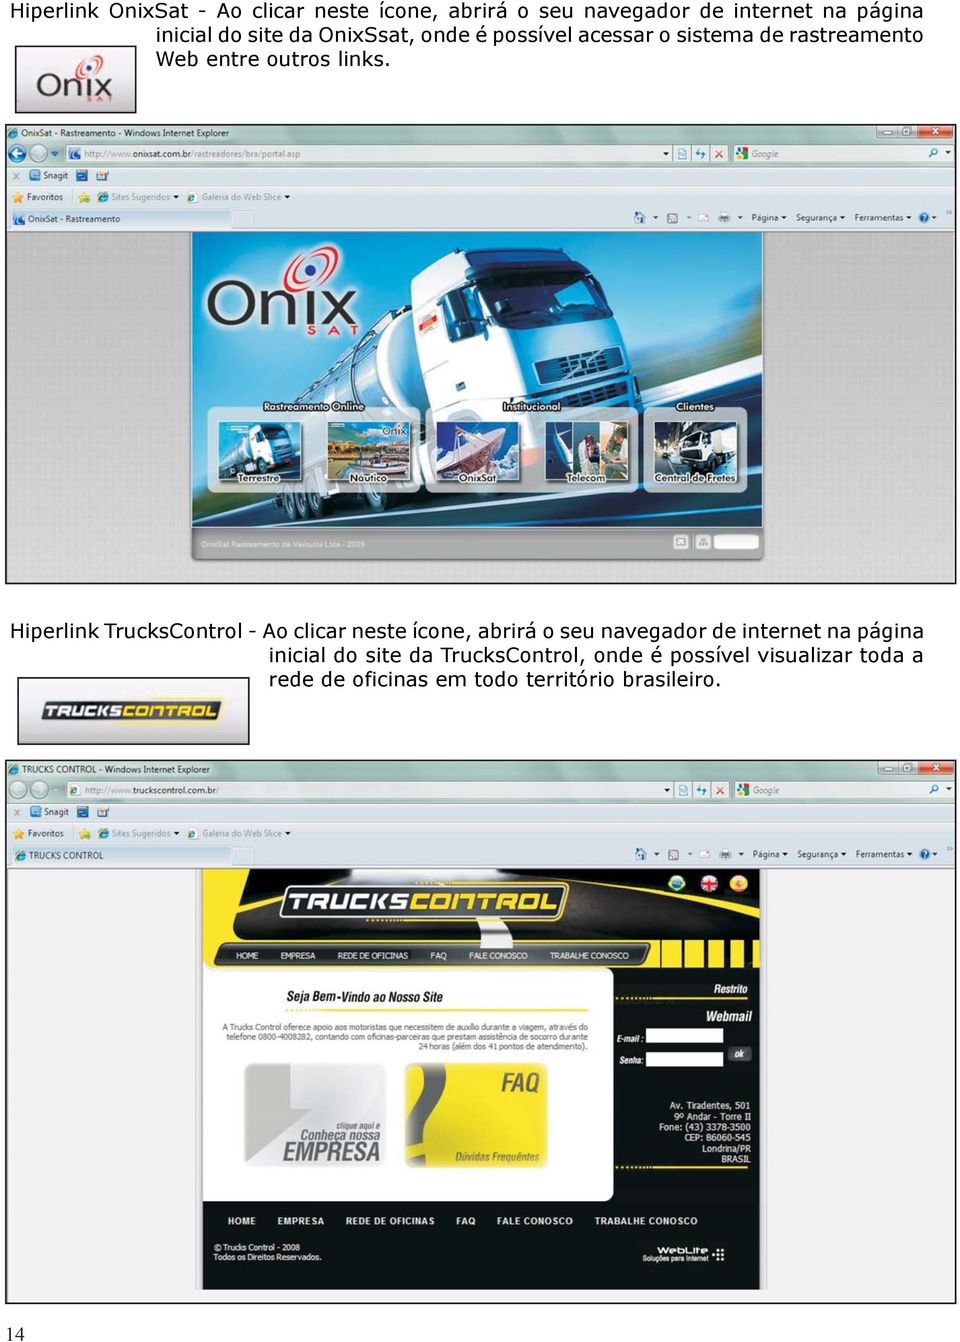 Hiperlink TrucksControl - Ao clicar neste ícone, abrirá o seu navegador de internet na página